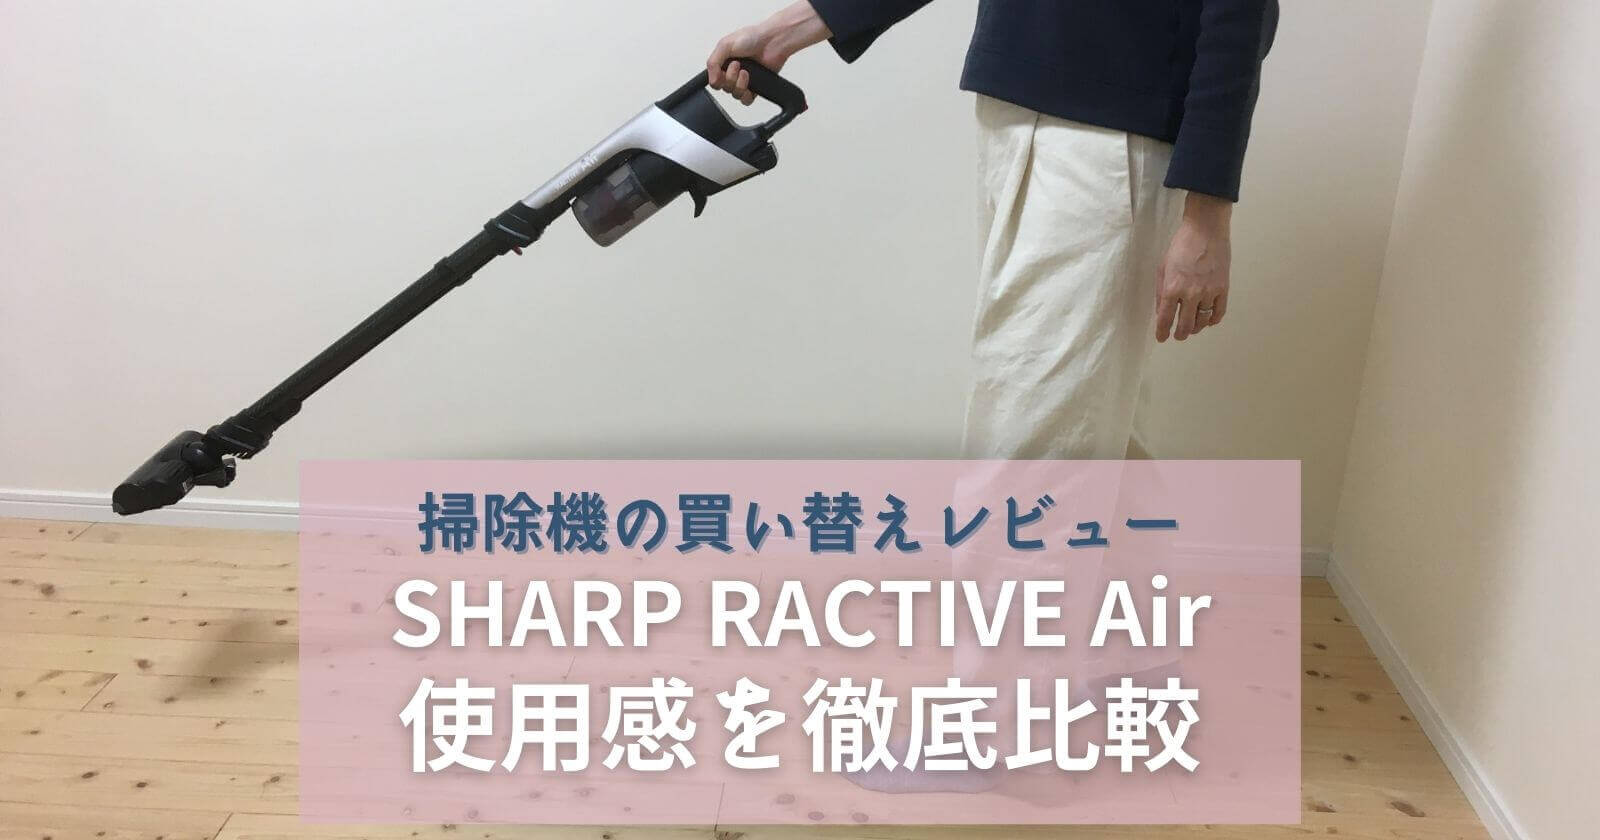 【掃除機買替えレビュー】シャープラクティブエアの使用感を口コミ(SHARPコードレスEC-AR7)